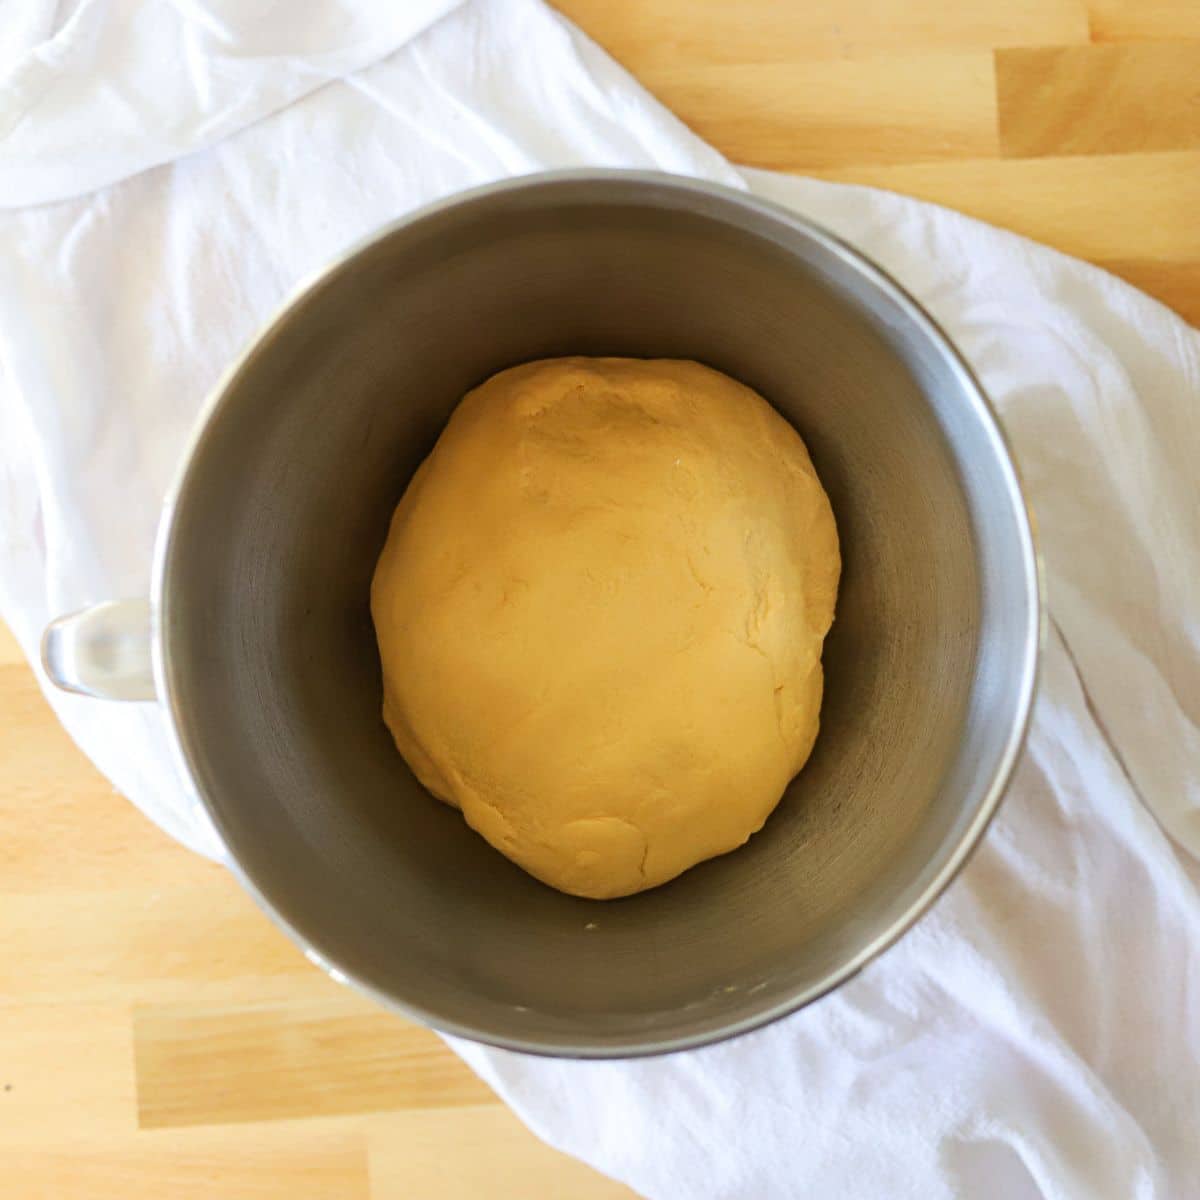 a ball of sweet potato dough in a silver bowl.